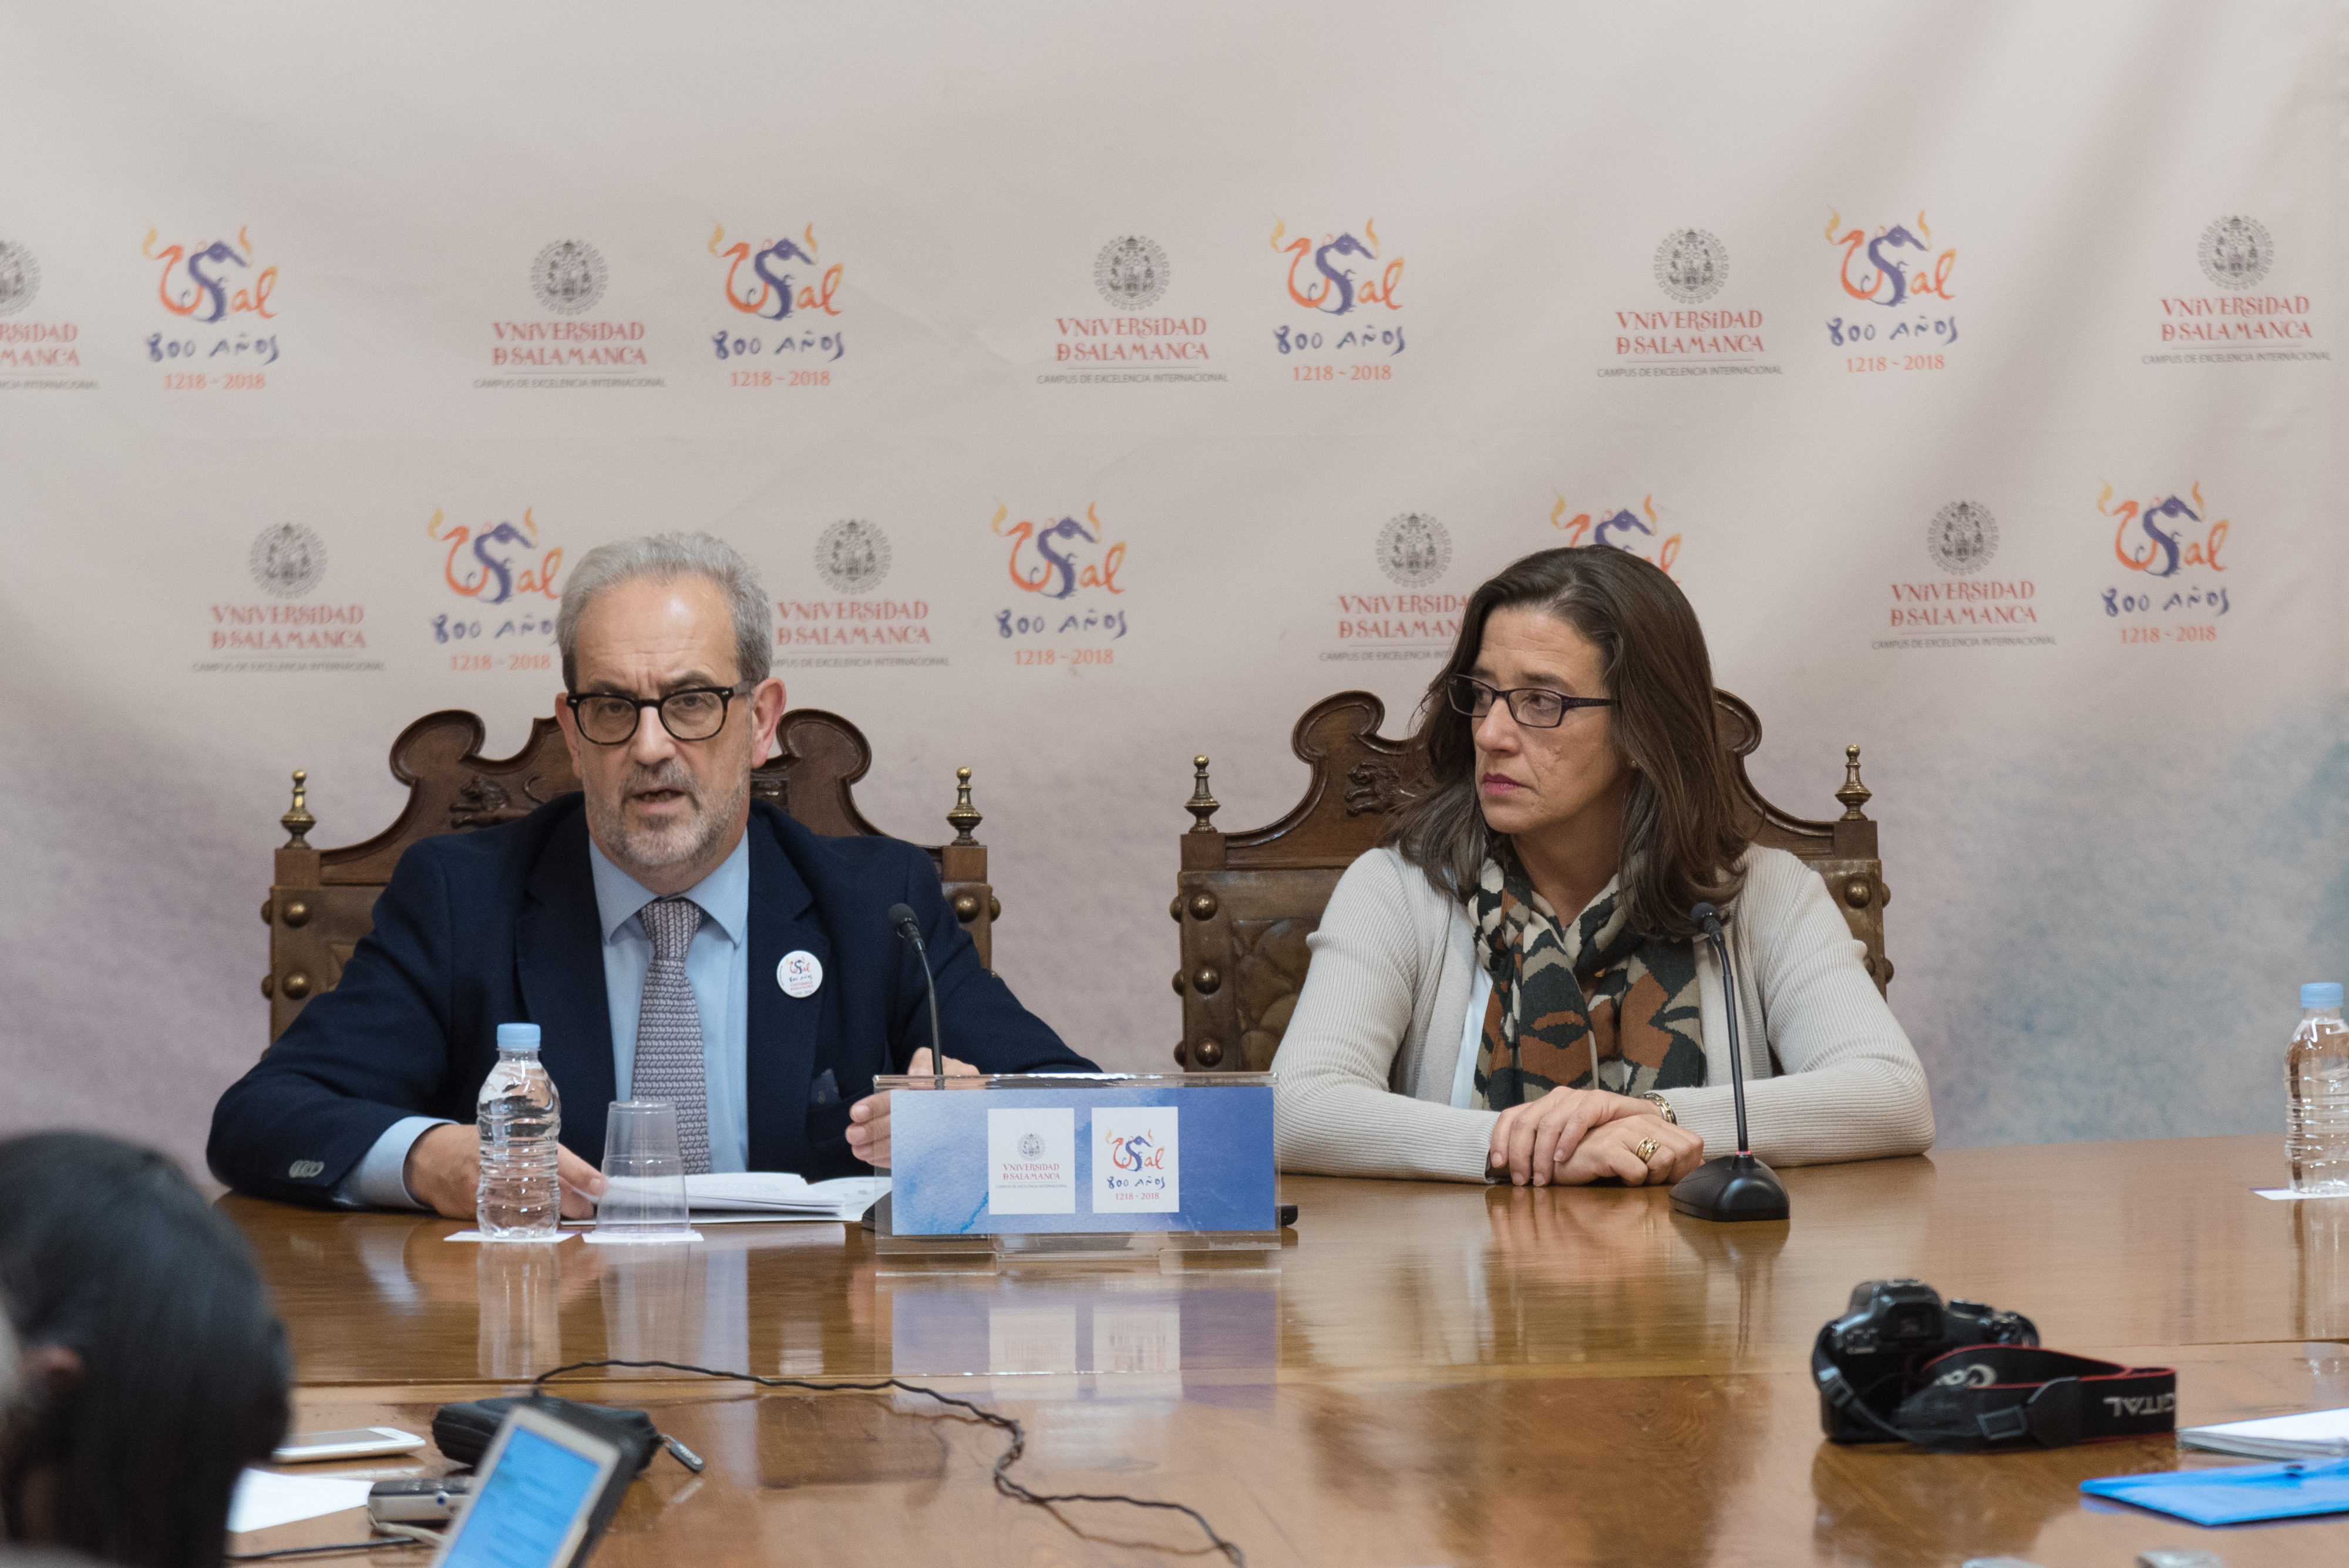 Publicado en el portal de transparencia el Informe Final de Gestión del rector Ruipérez  